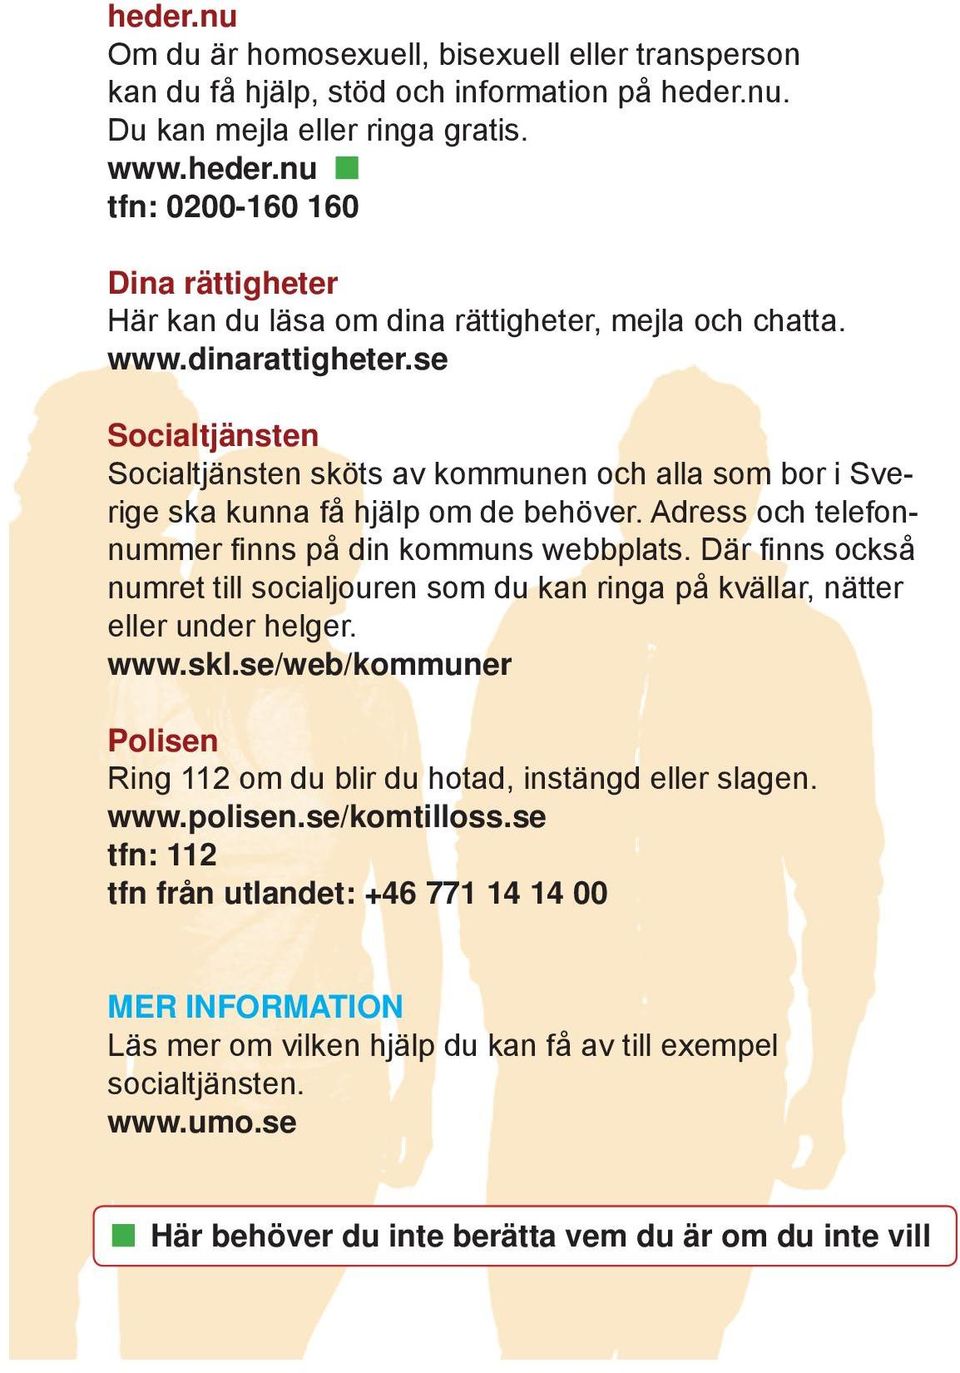 Där fi nns också numret till socialjouren som du kan ringa på kvällar, nätter eller under helger. www.skl.se/web/kommuner Polisen Ring 112 om du blir du hotad, instängd eller slagen. www.polisen.